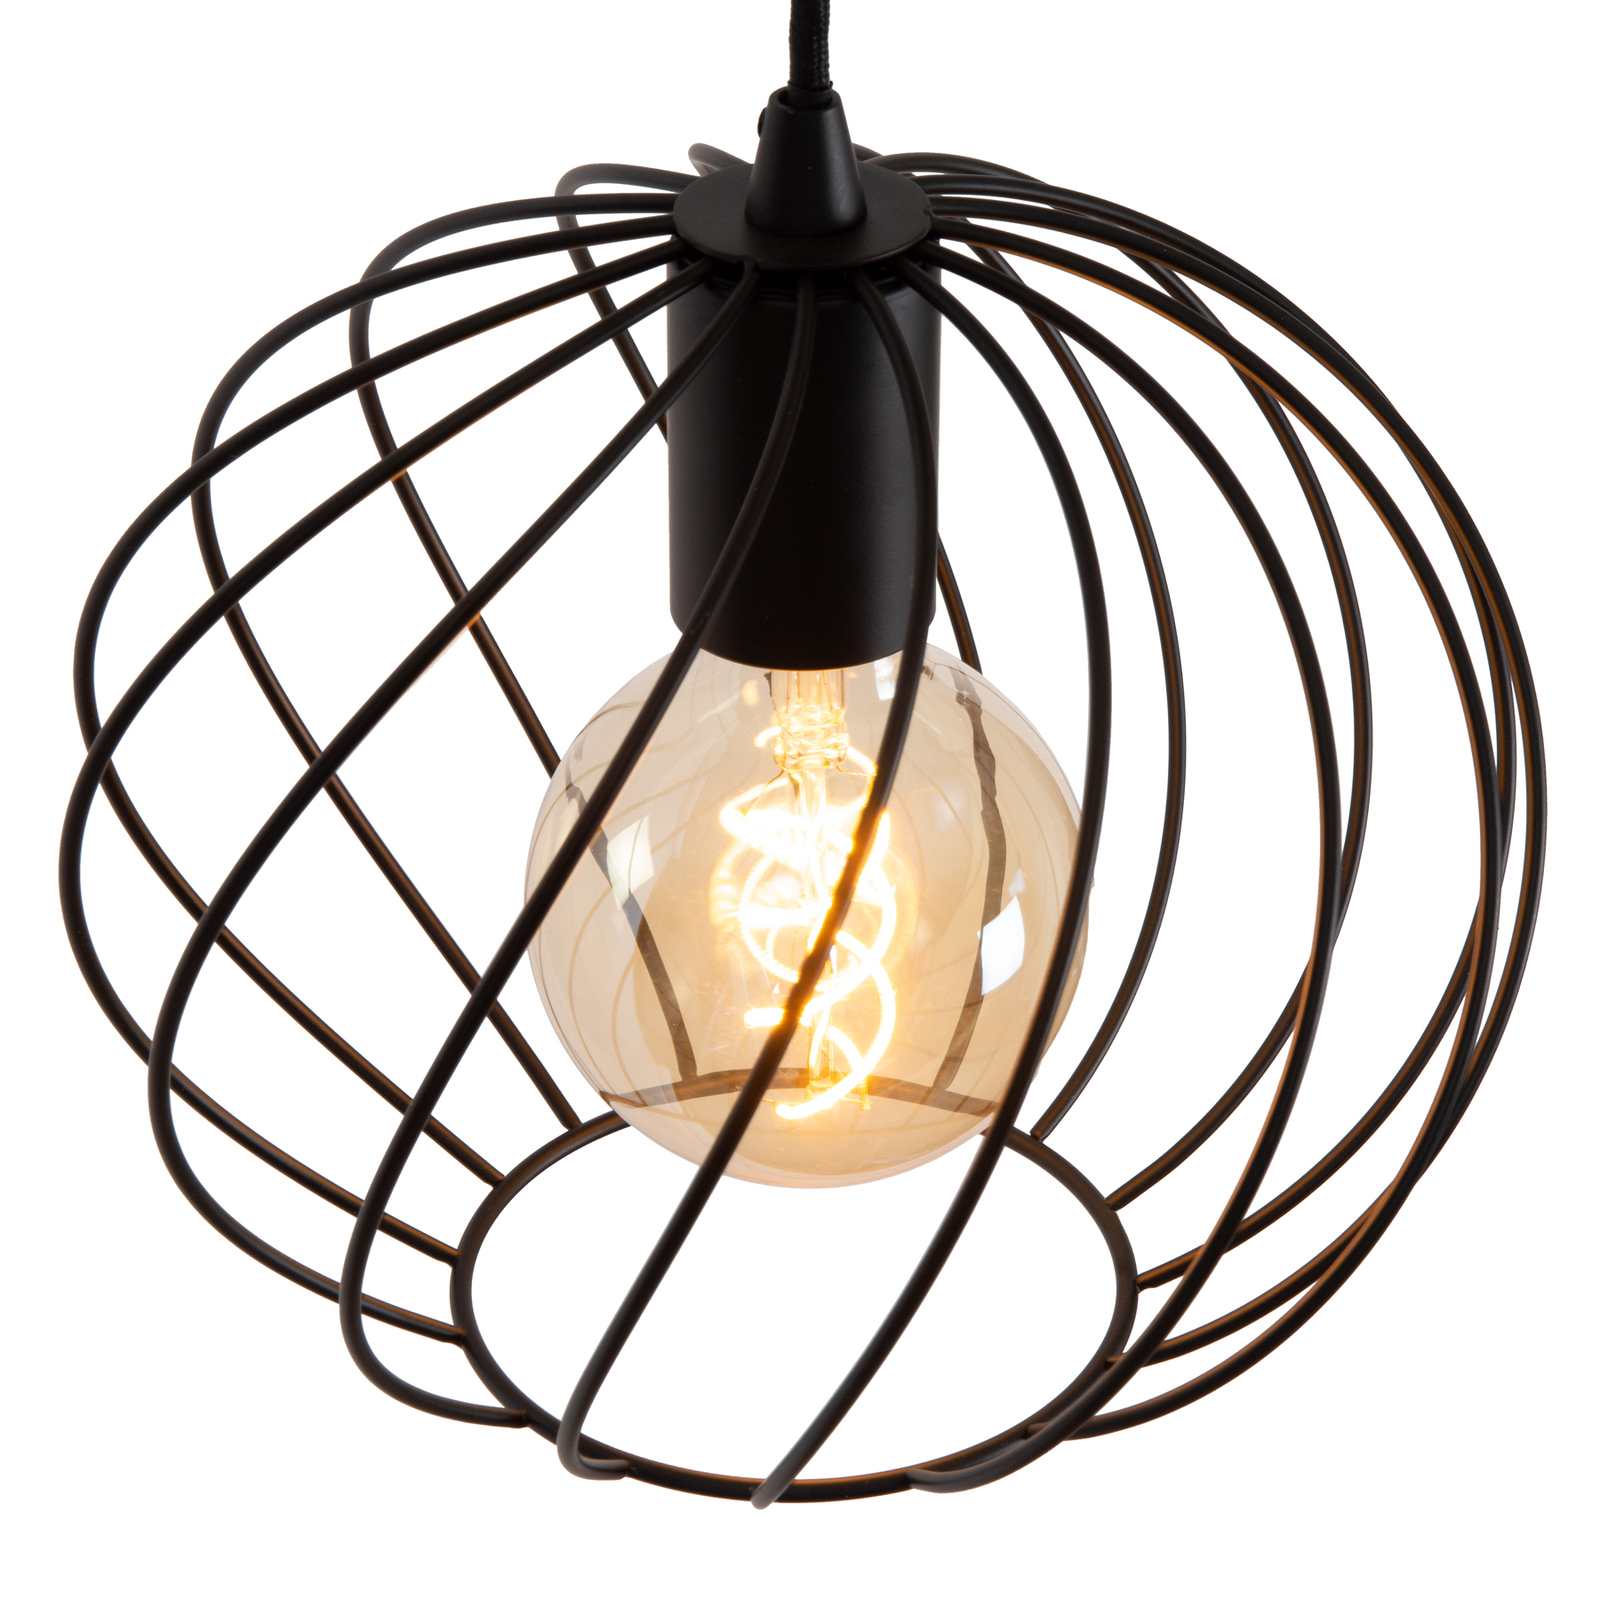 Hanglamp Danza, 3-lamps, rond, zwart